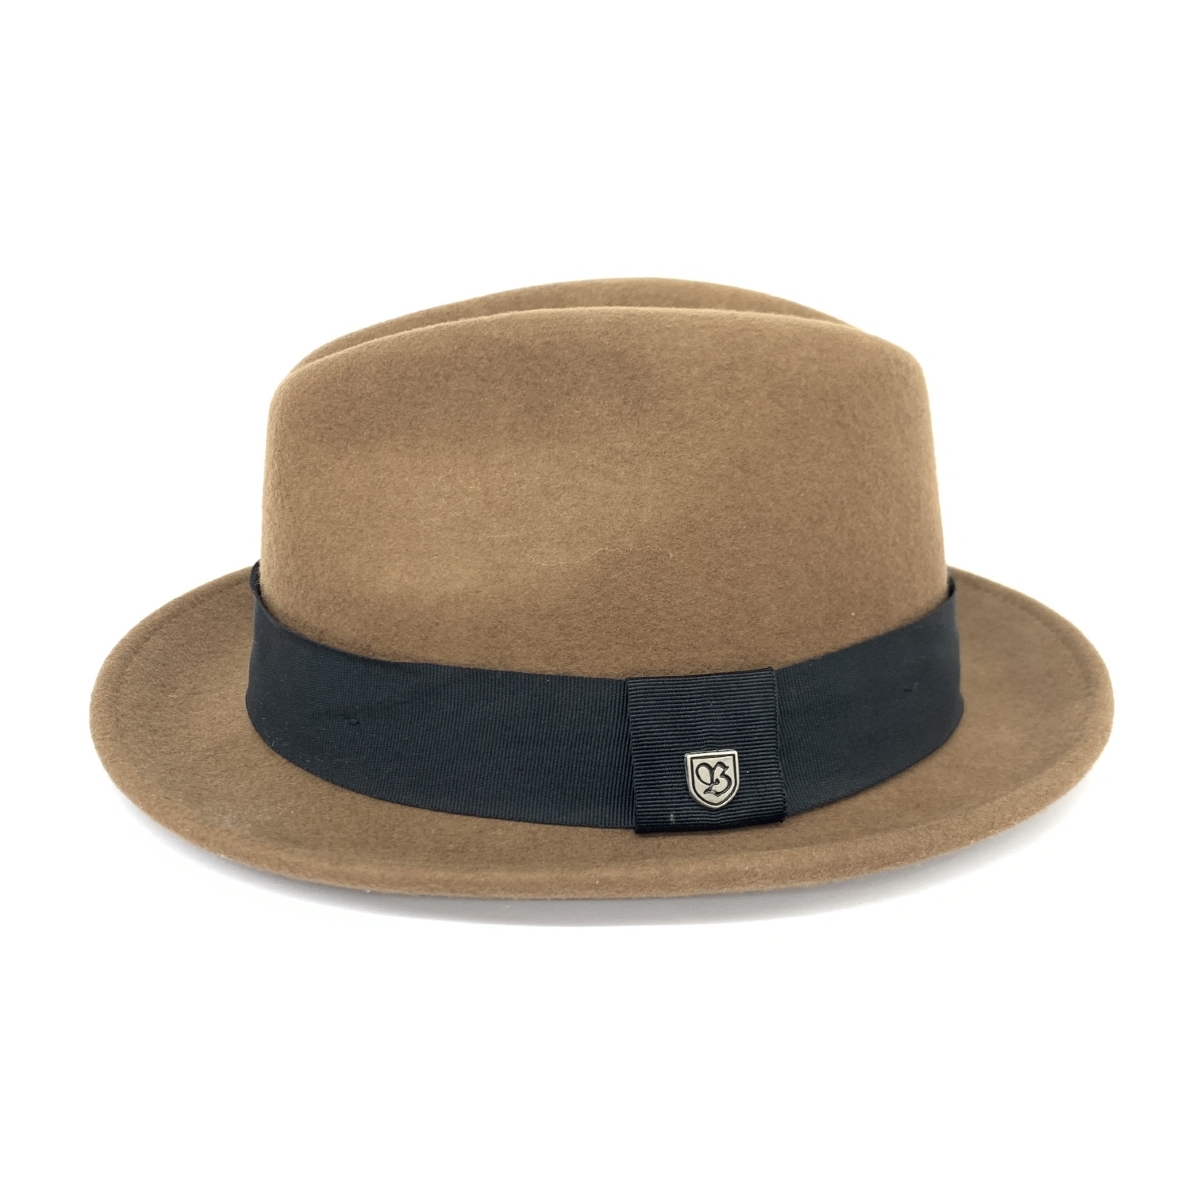 良好◆BRIXTON ブリクストン ハット LARGE◆ ブラウン ウール100％ ユニセックス 帽子 ハット hat 服飾小物_画像2